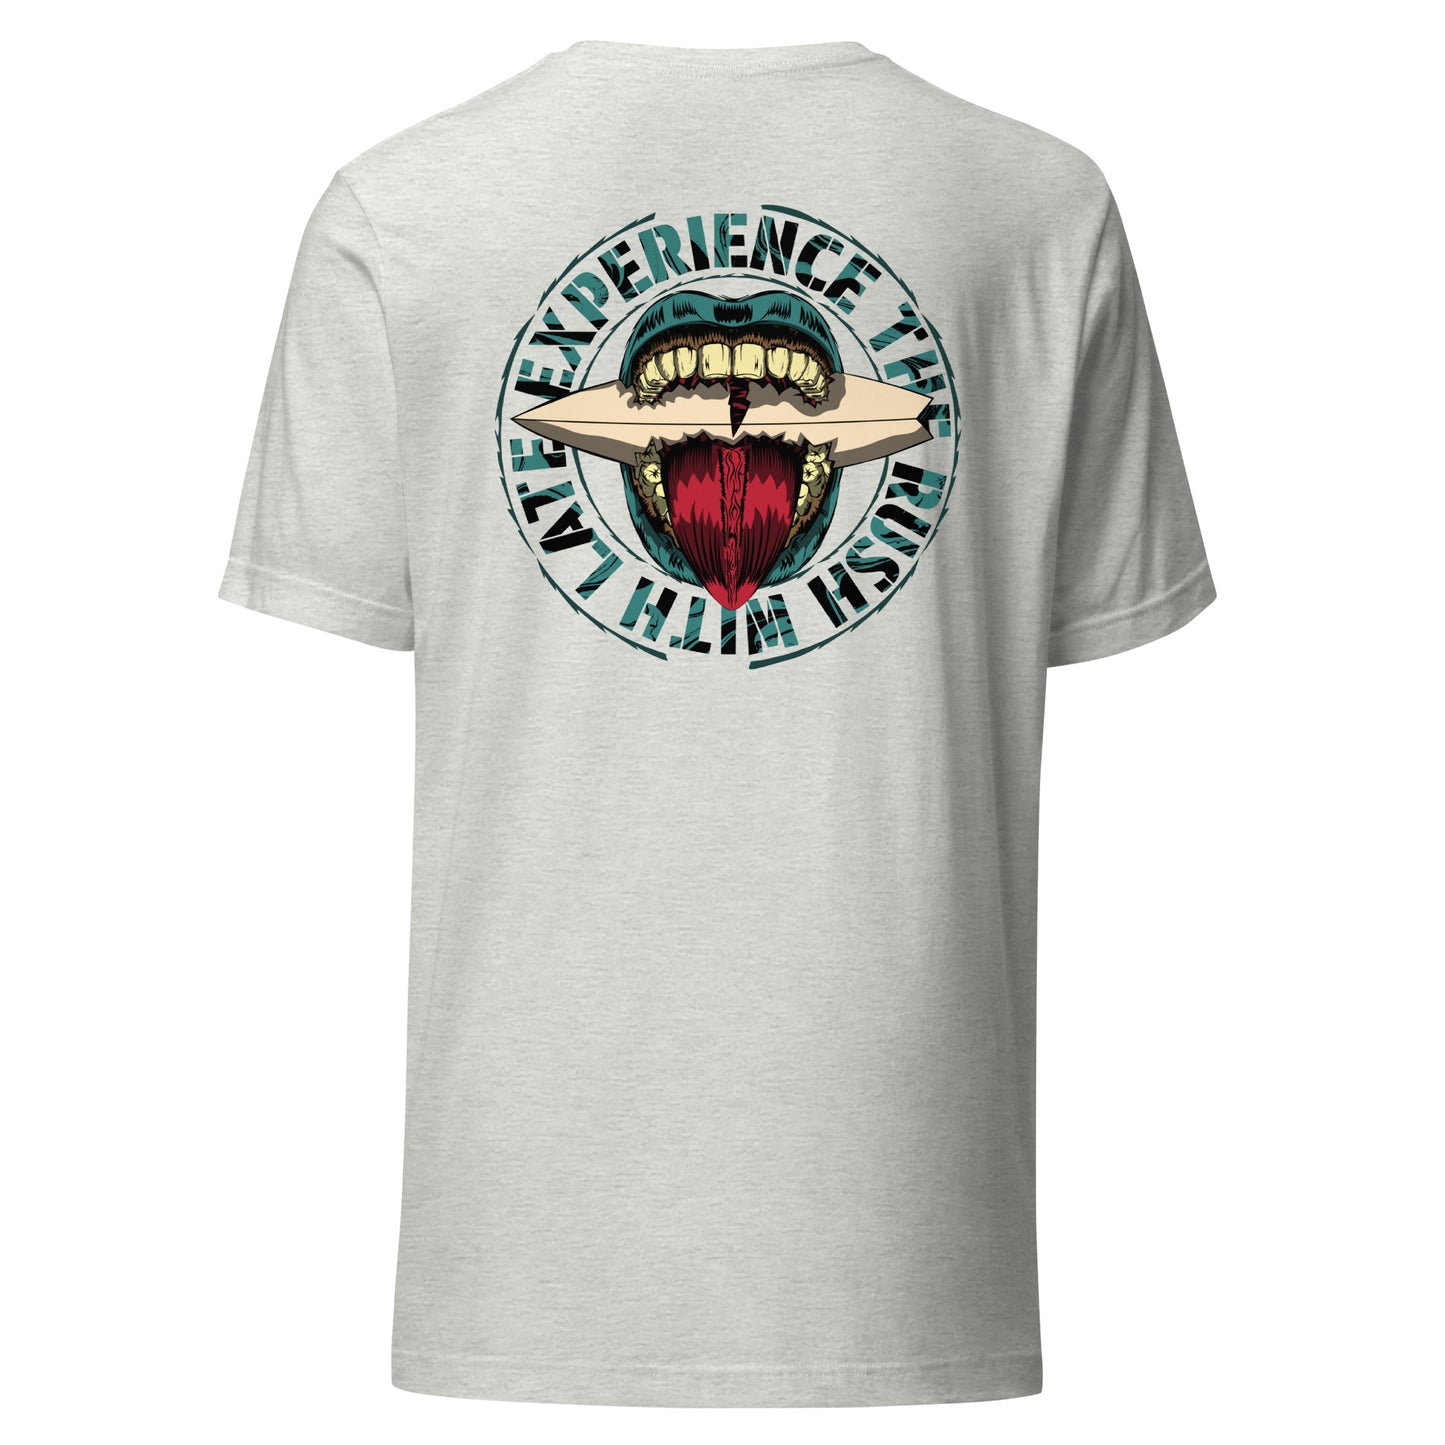 T-Shirt de surfeur style santacruz skateboarding et planche de surf texte experience the rush Late t-shirt dos couleur gris